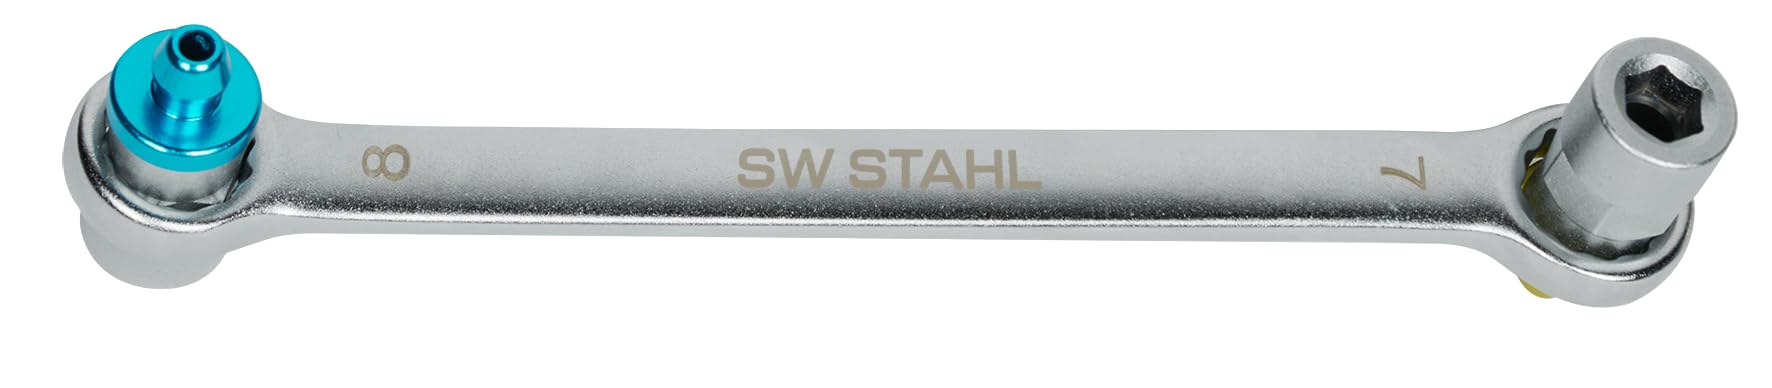 SW Stahl 01452L-1 Bremsen-Entlüftungsschlüssel 7 x 8 mm I Bremsenentlüftungsschlüssel I Bremsen-Entlüfter-Schlüssel I Bremsen-Schlüssel von SW-Stahl